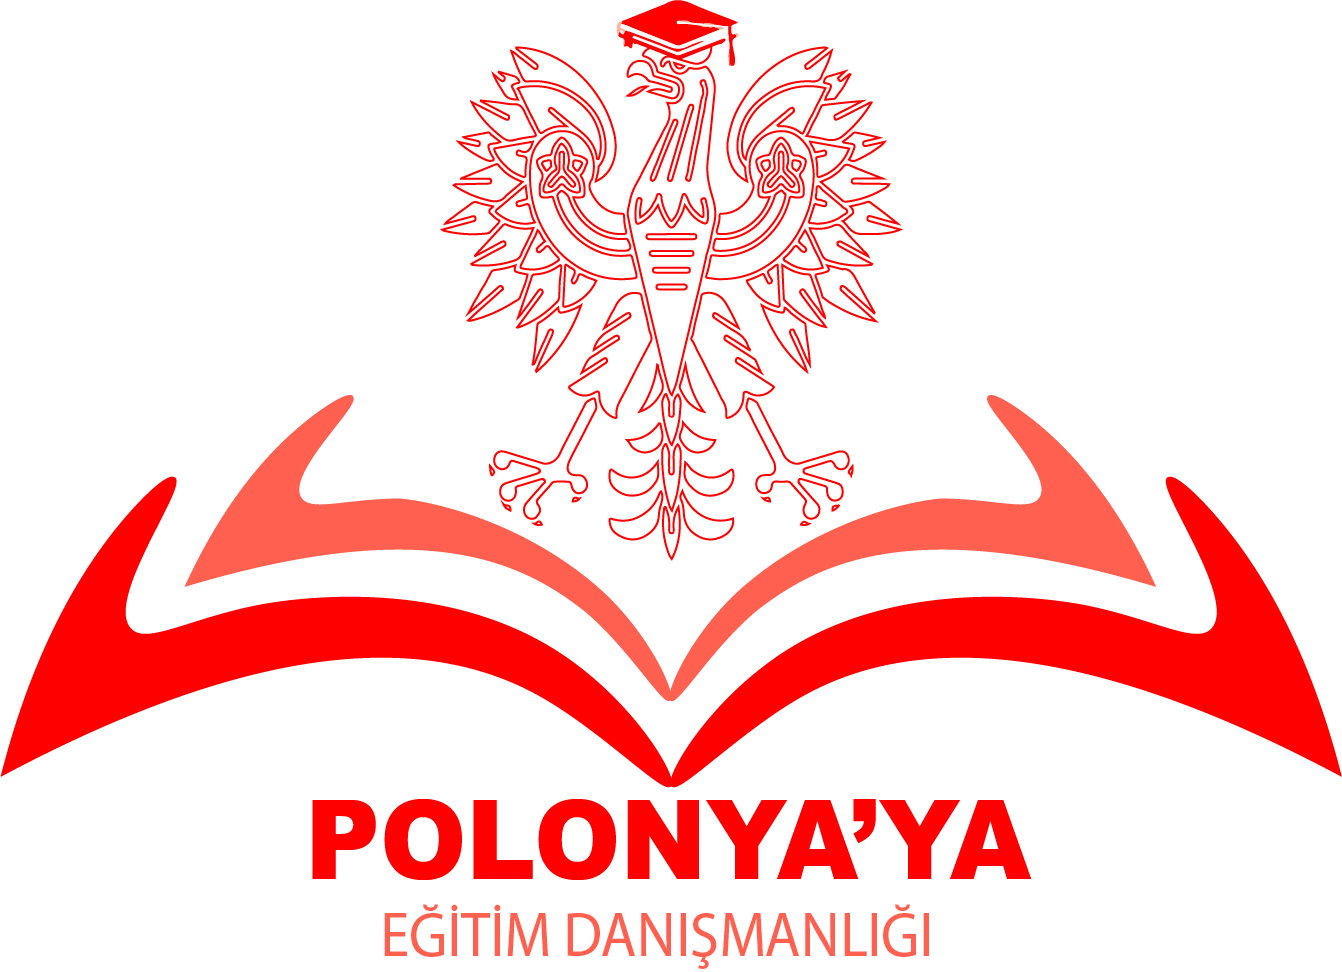 Polonya'ya eğitim danışmanlığı